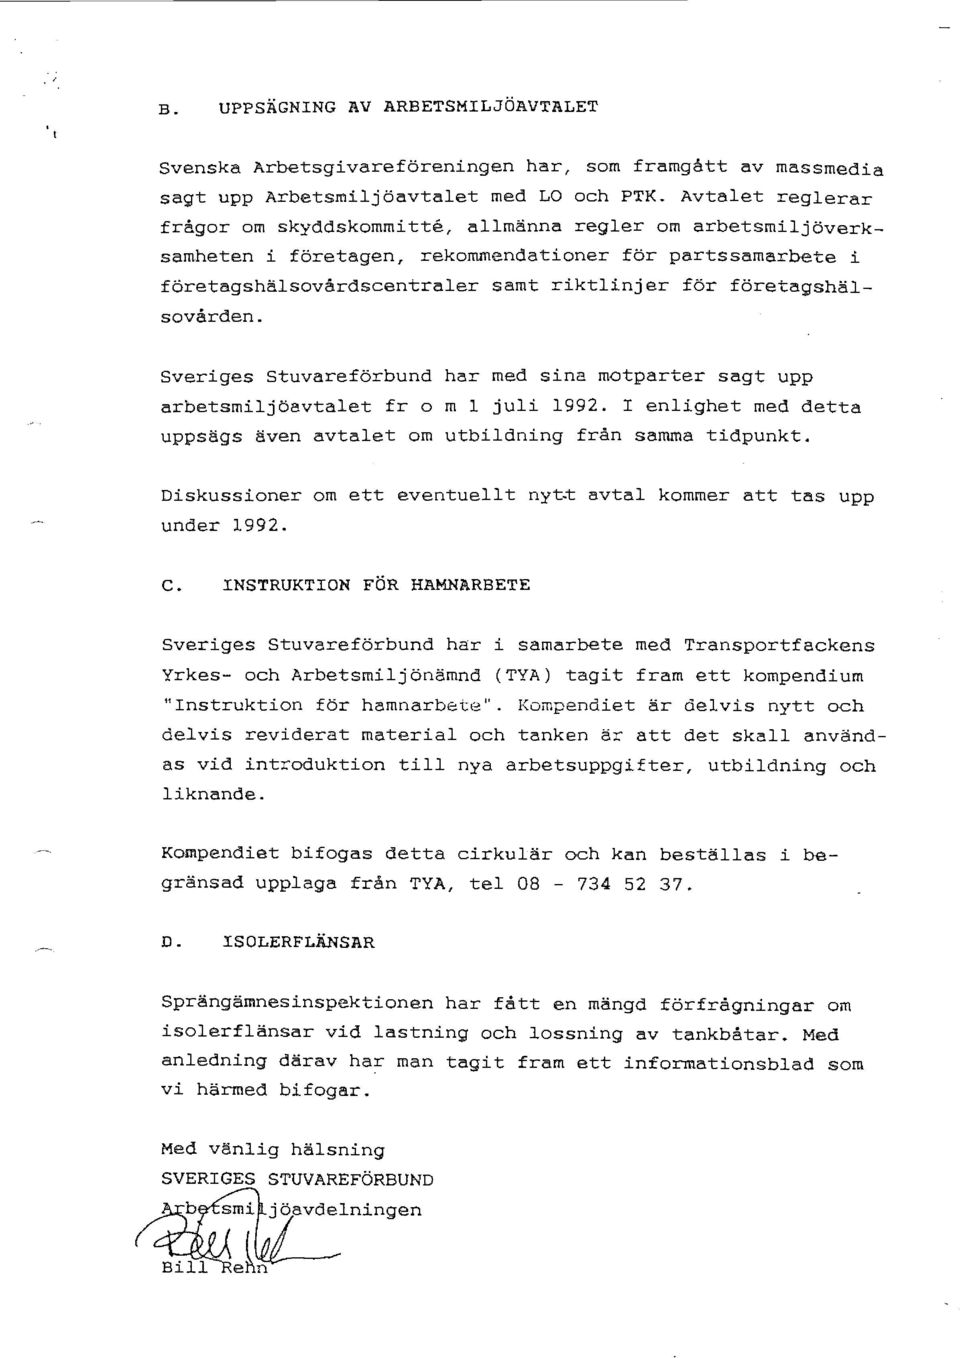 företagshälsovården. Sveriges stuvareförbund har med sina motparter sagt upp arbetsmiljöavtalet fr o m l juli 1992. I enlighet med detta uppsägs även avtalet om utbildning från samma tidpunkt.